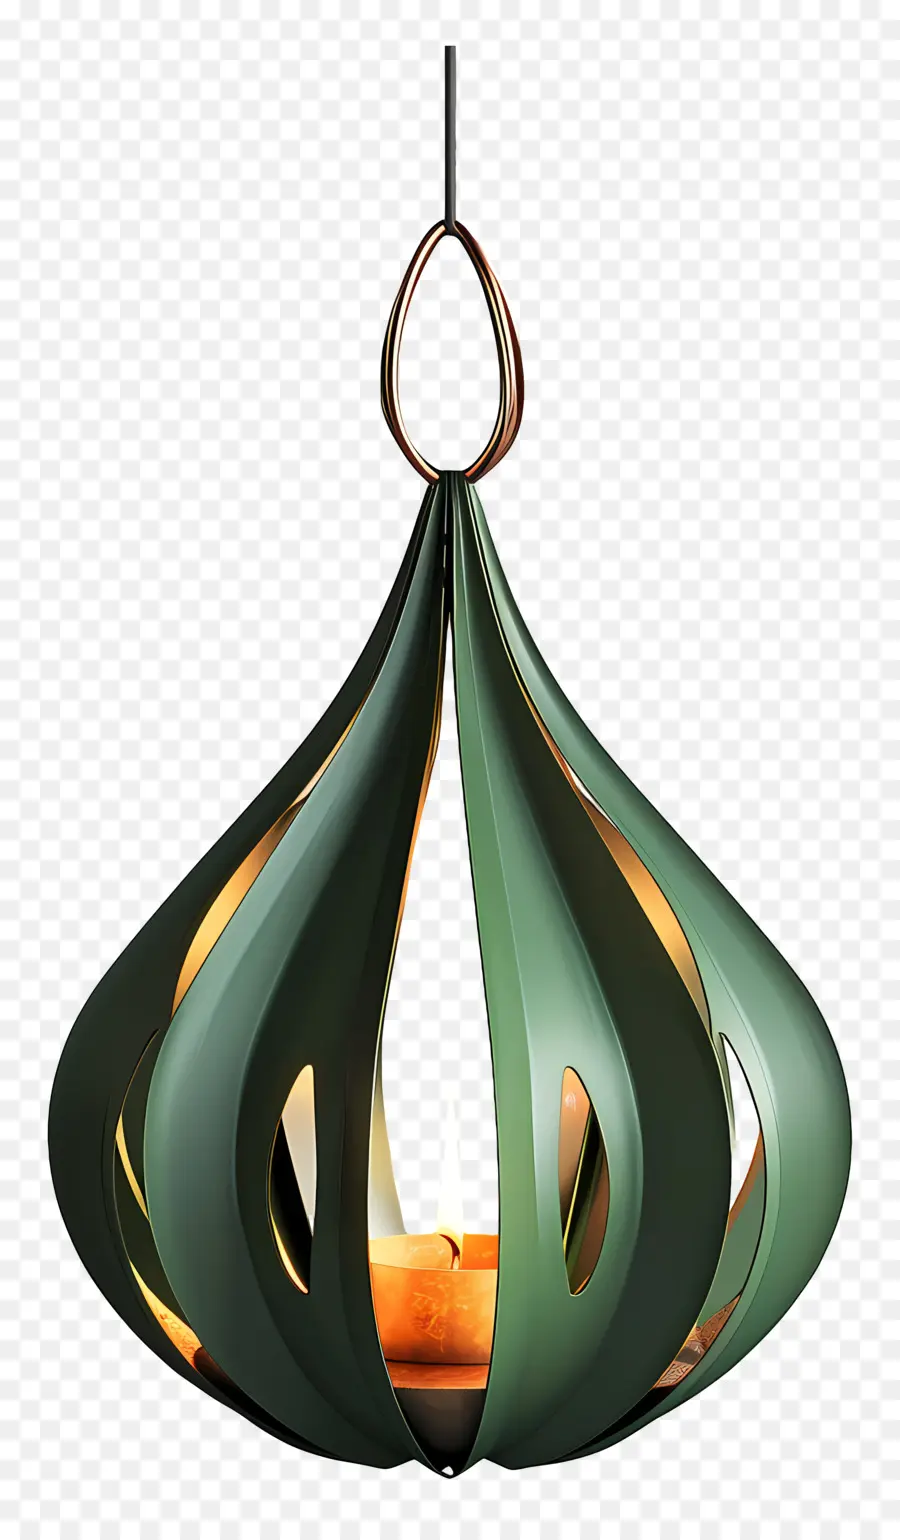 Hängende Teelichthalter Grüne Metallleuchte hängende Deckenleuchte runde Anhänger Leuchte Leuchte Leuchte - Grüne Metallrunde Leuchte mit Kerzenglühen